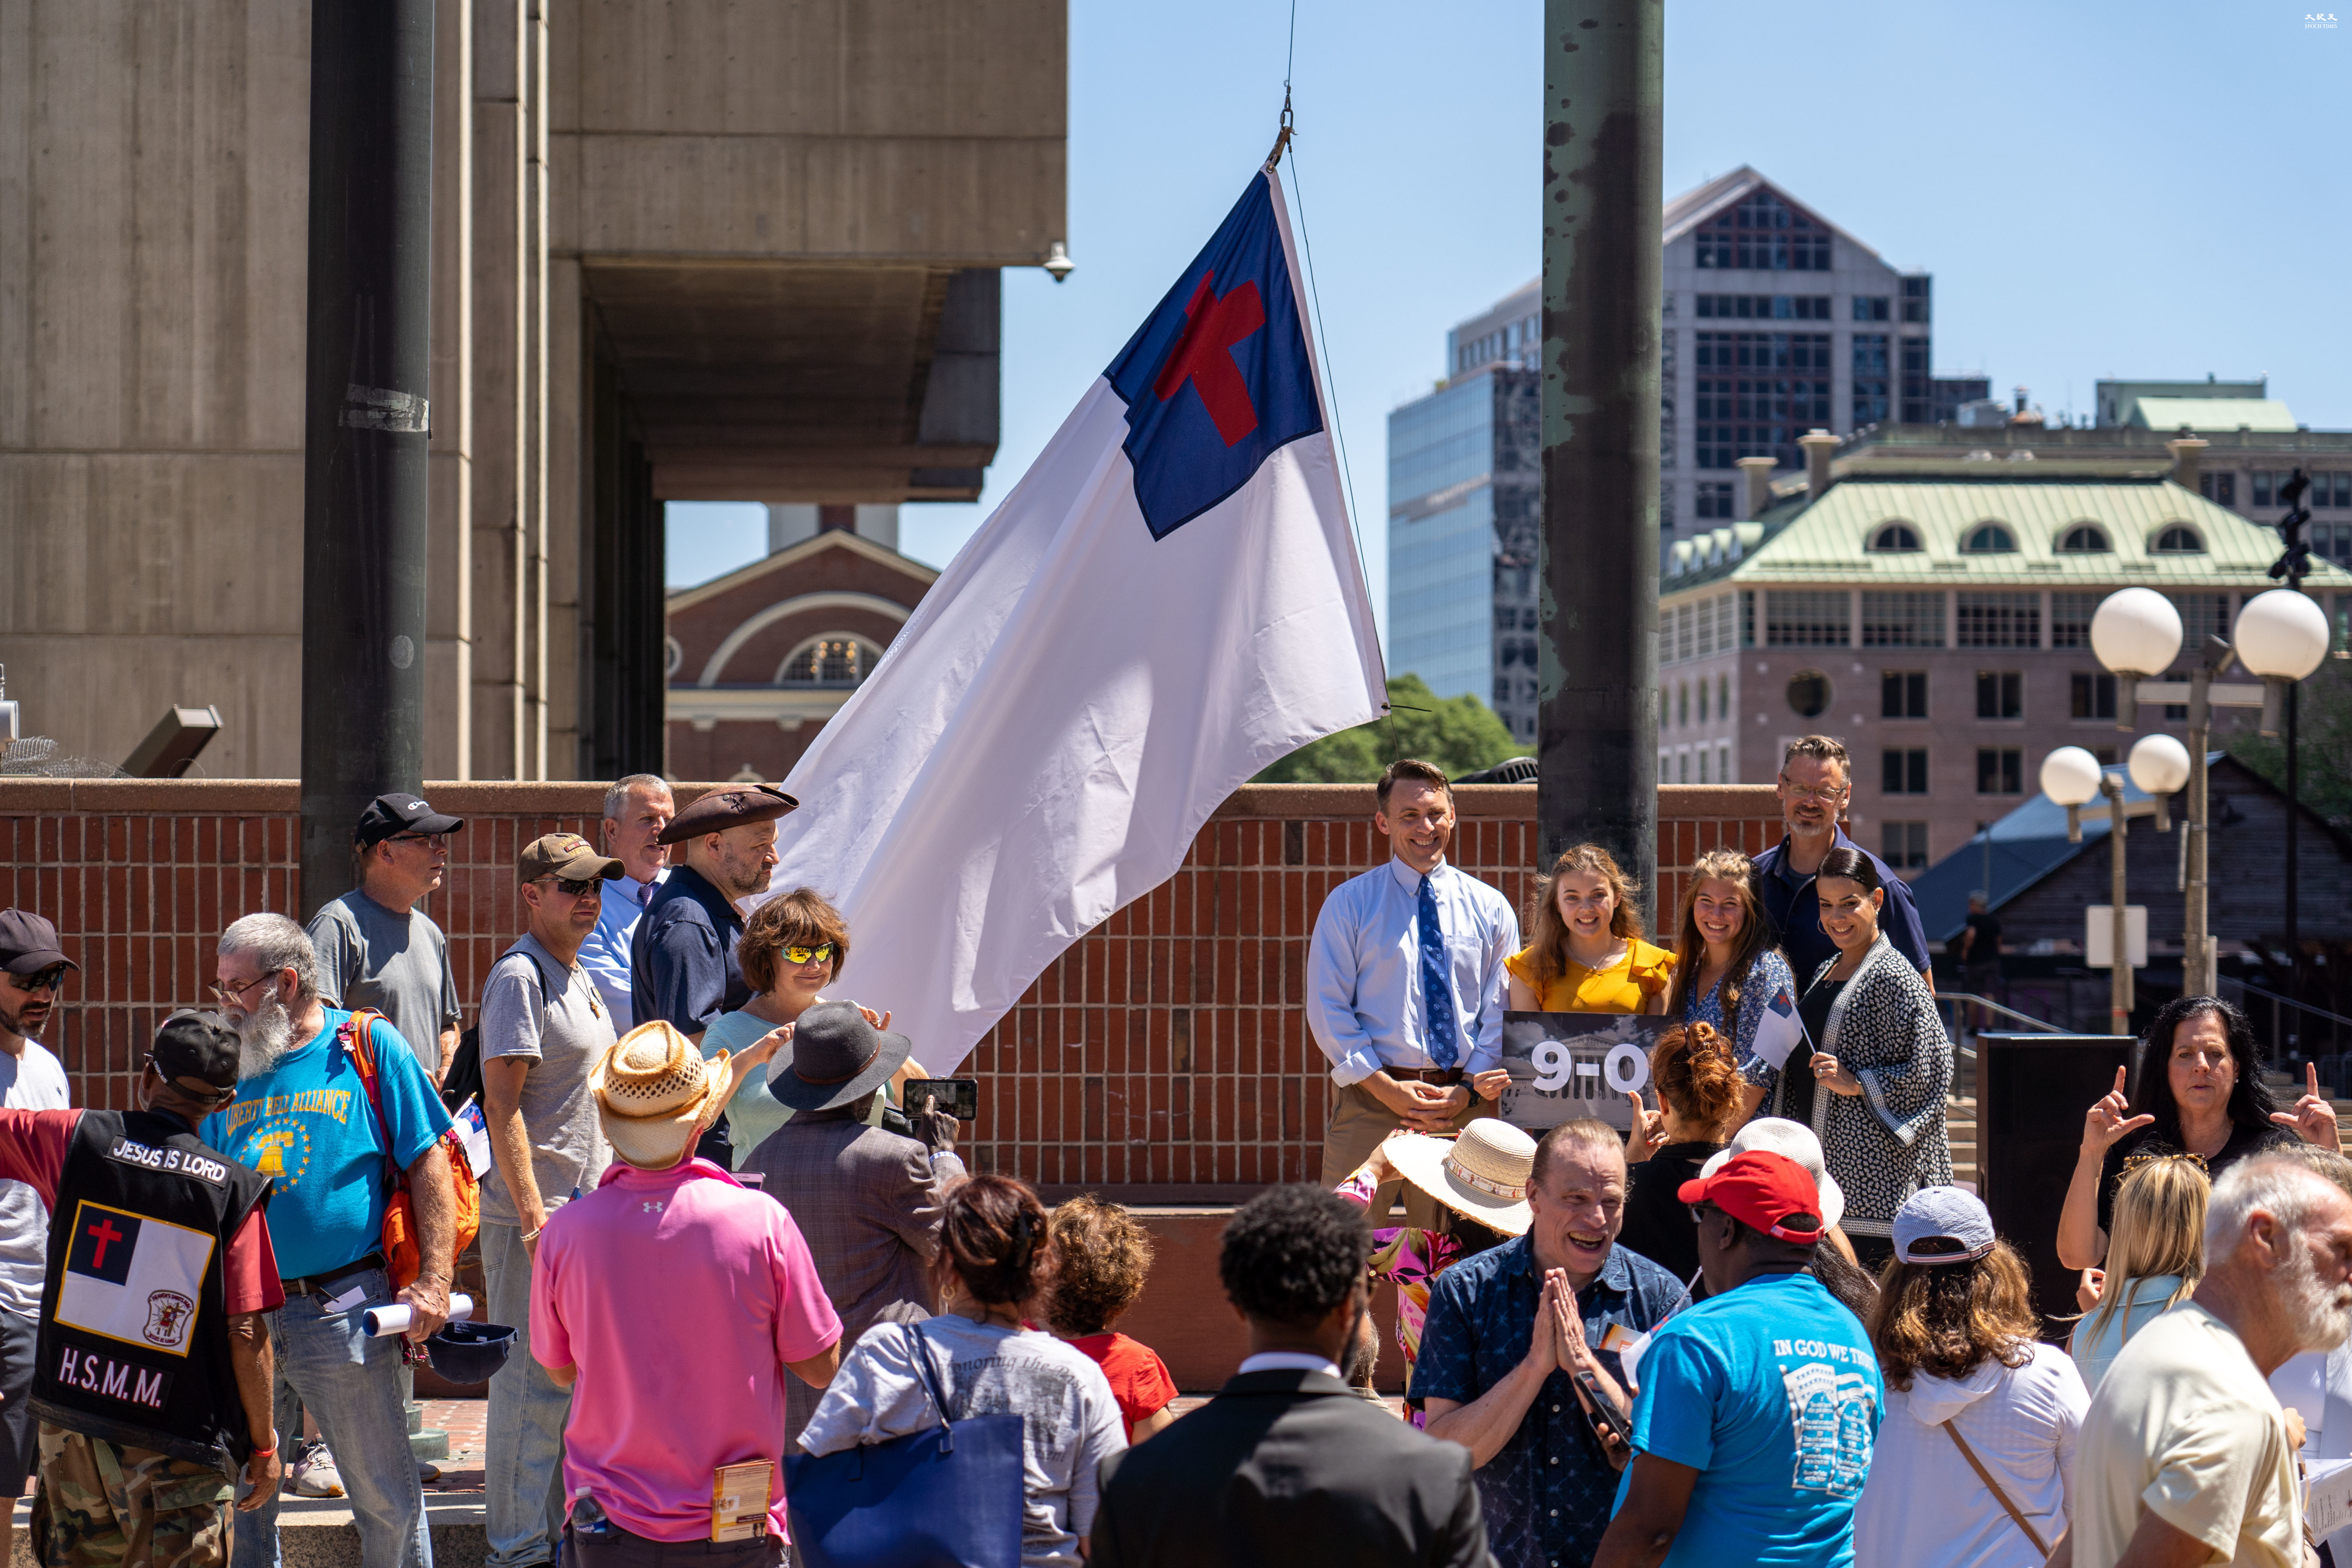 贏言論自由訴訟基督教旗升上波士頓市府廣場| 憲法營| Camp 